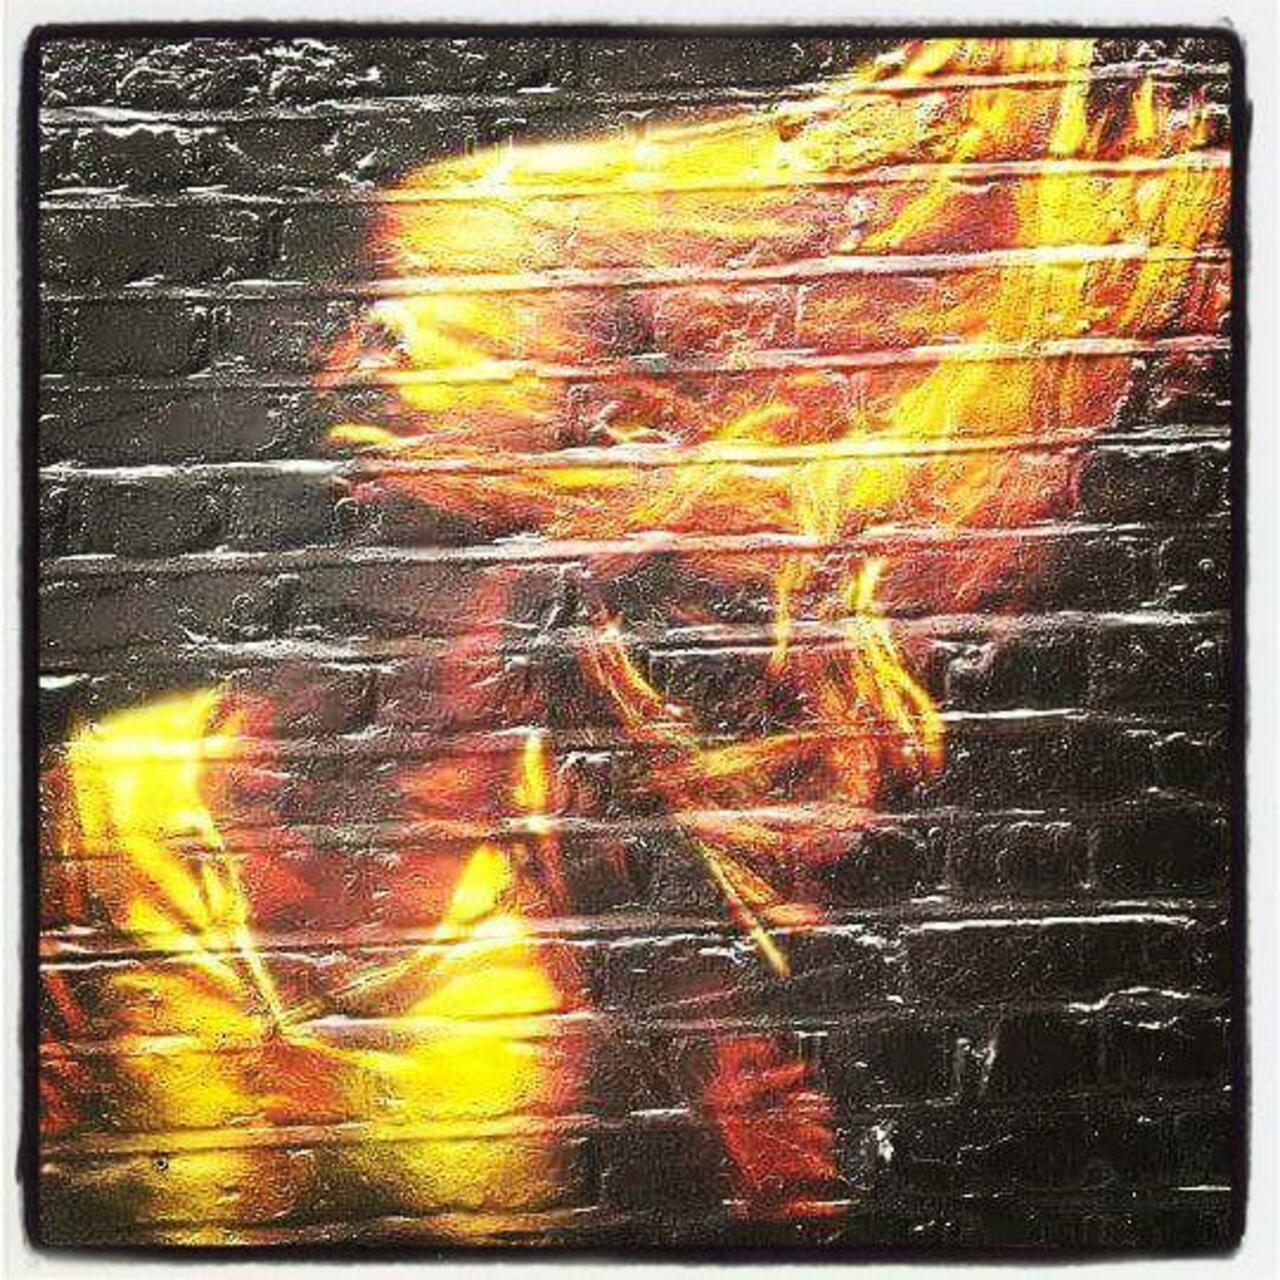 #streetart #london #girl #face #hair #bricks #england #londonstreetart #street #art #streetartlondon #graffiti #ste… http://t.co/vbKbuXOGLA